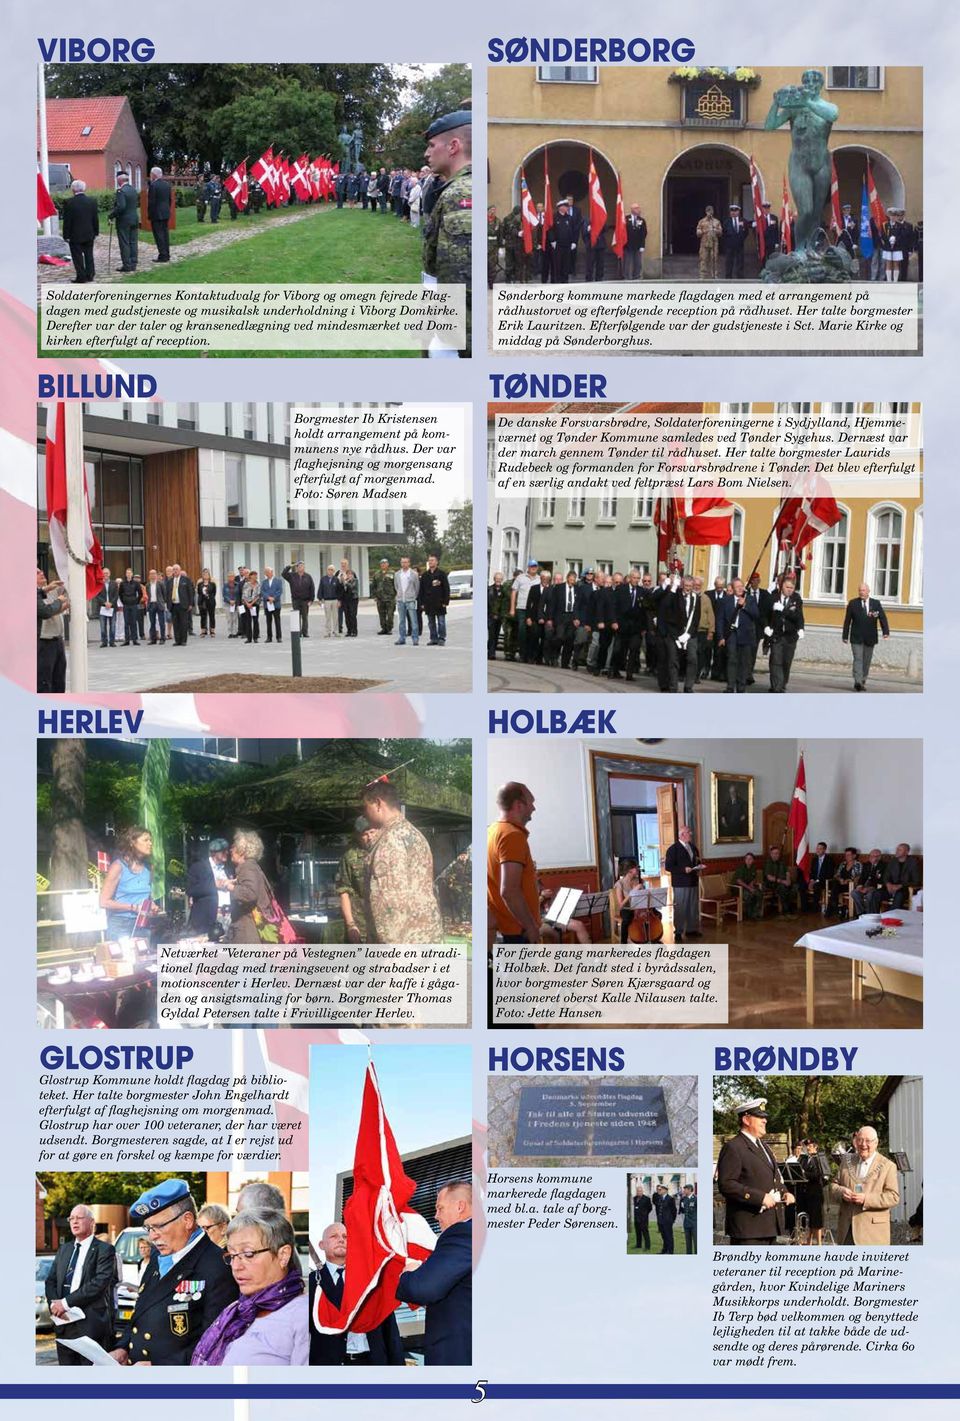 Soldaterforeningernes Kontaktudvalg for Viborg og omegn fejrede Flagdagen med gudstjeneste og musikalsk underholdning i Viborg Domkirke.